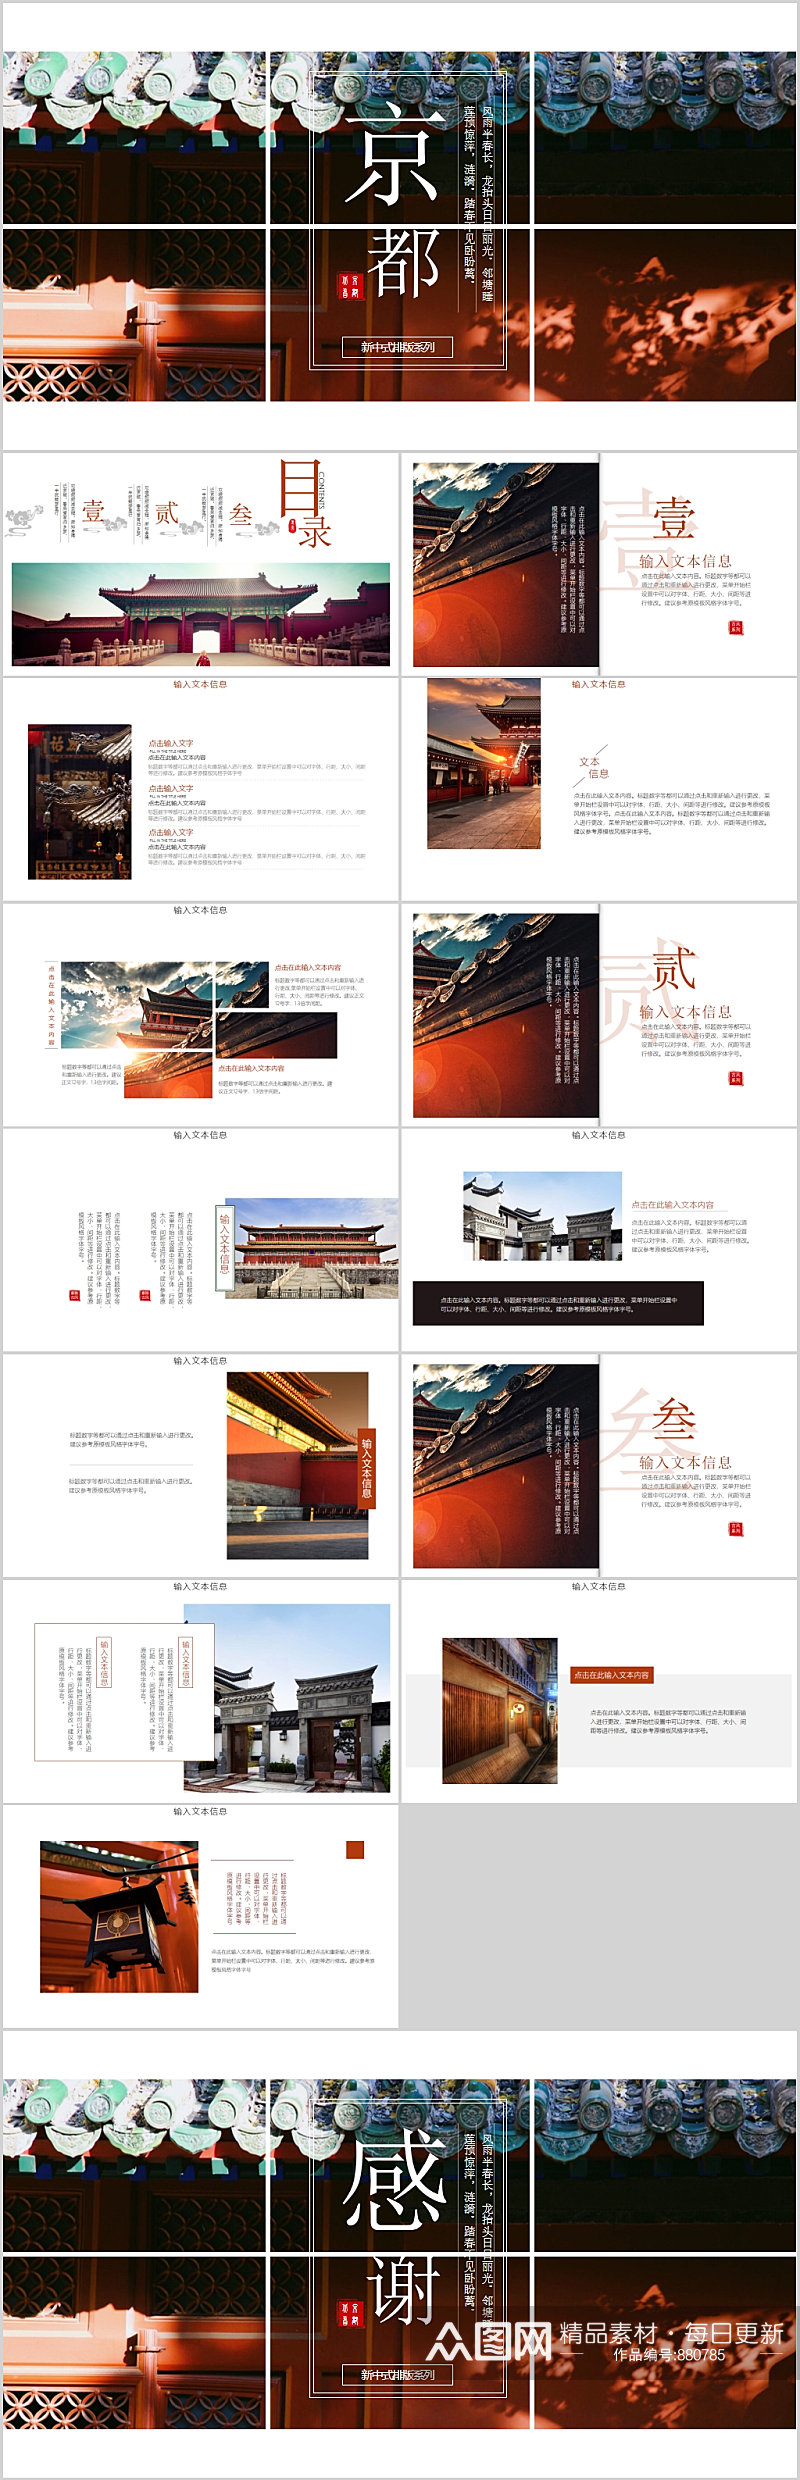 京都建筑文化PPT模板素材